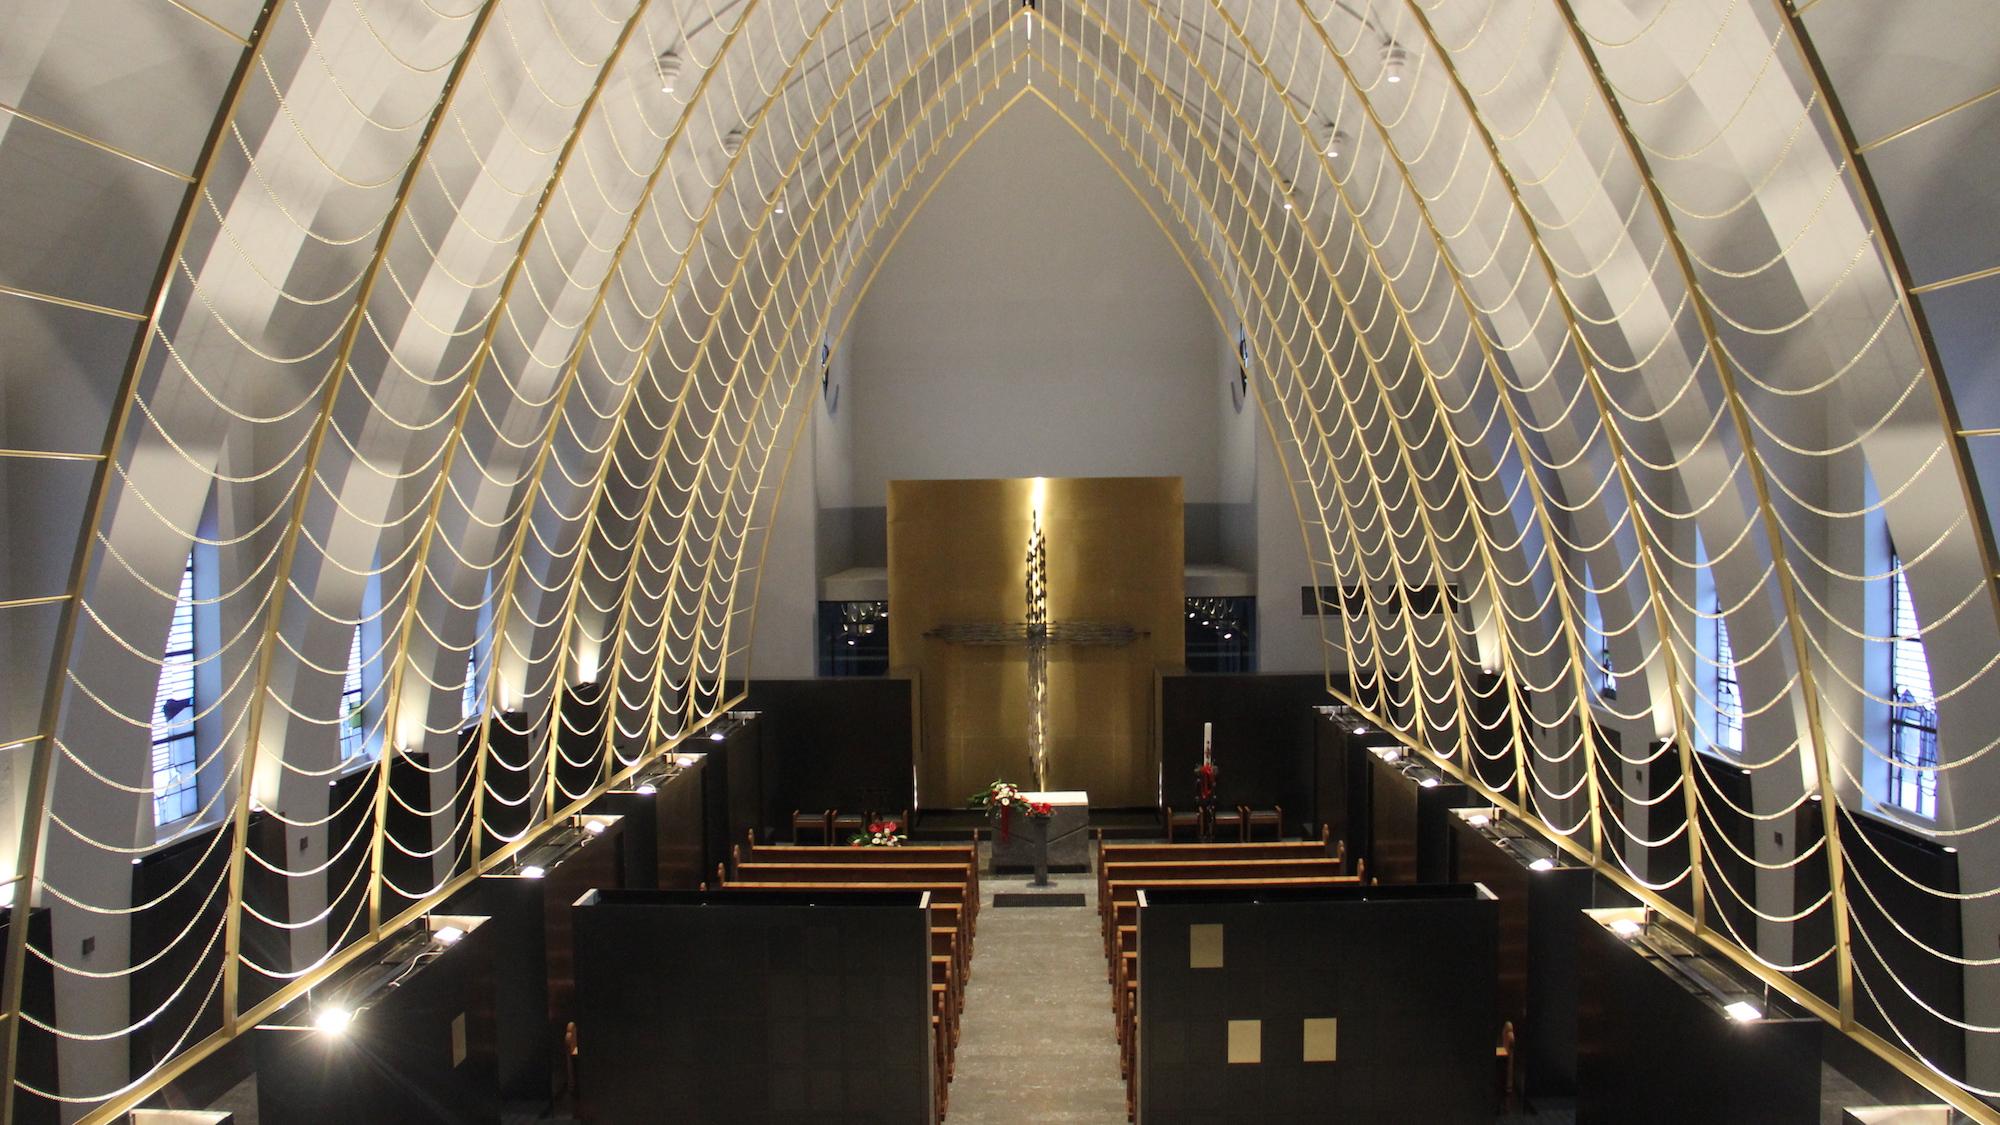 Wie ein Netz aus Licht spannen sich von unten angestrahlte Messingketten über die Kapelle. (c) Andrea Thomas